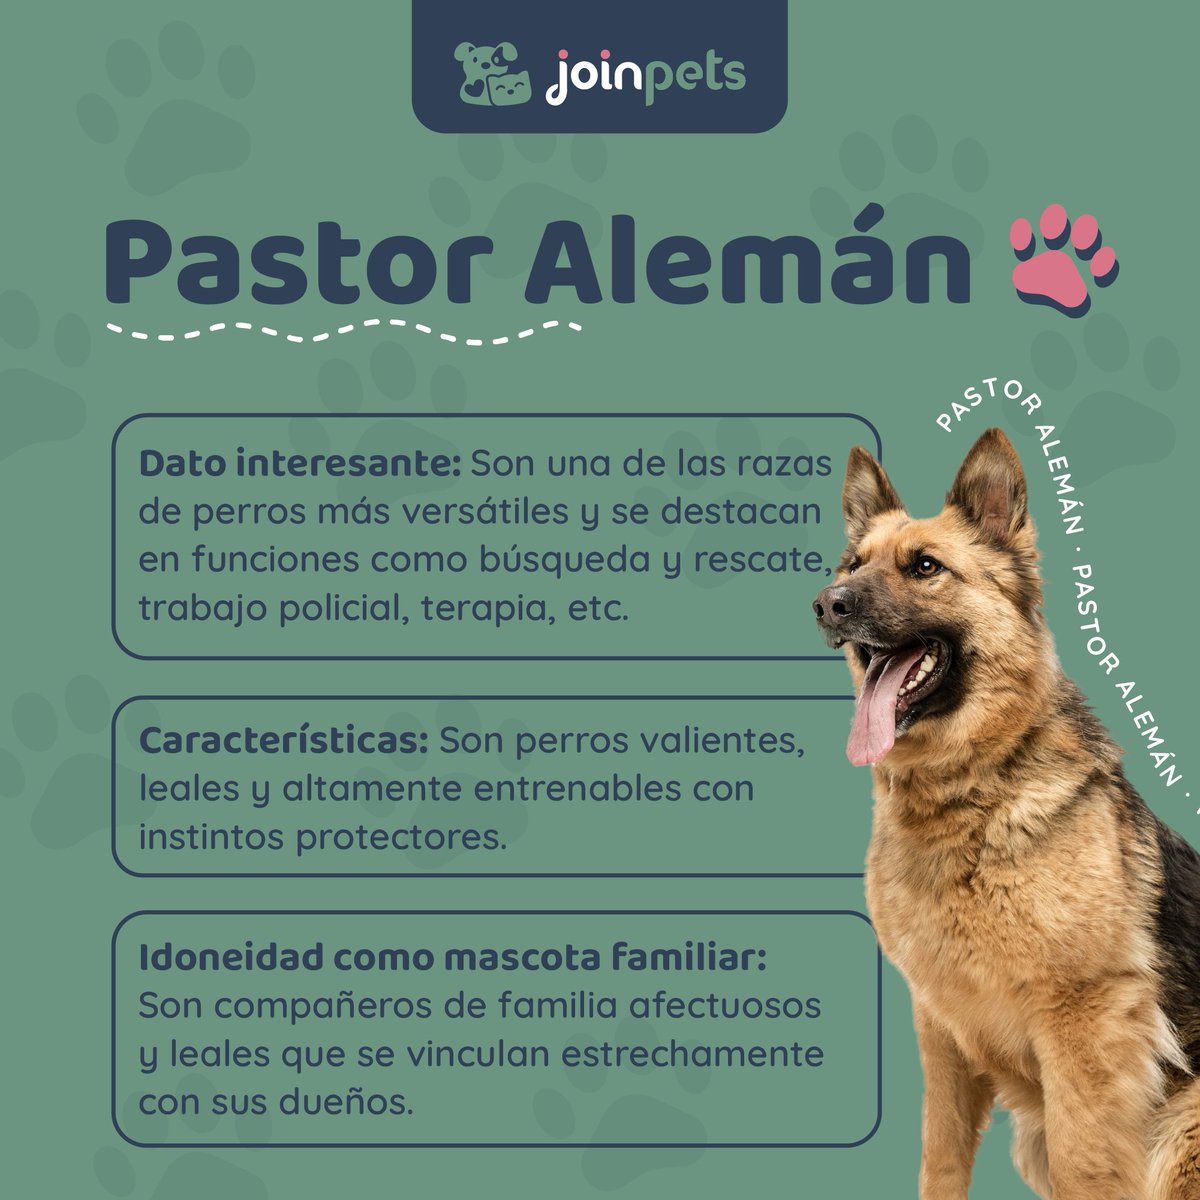 🐾 Datos sobre la raza de perros Pastor Alemán 🐶

#pastoraleman #perros #amantesdeperros #cachorro #mascotas #mascotasfelices #curiosidades #sabiasque #curiosidadesdeperros